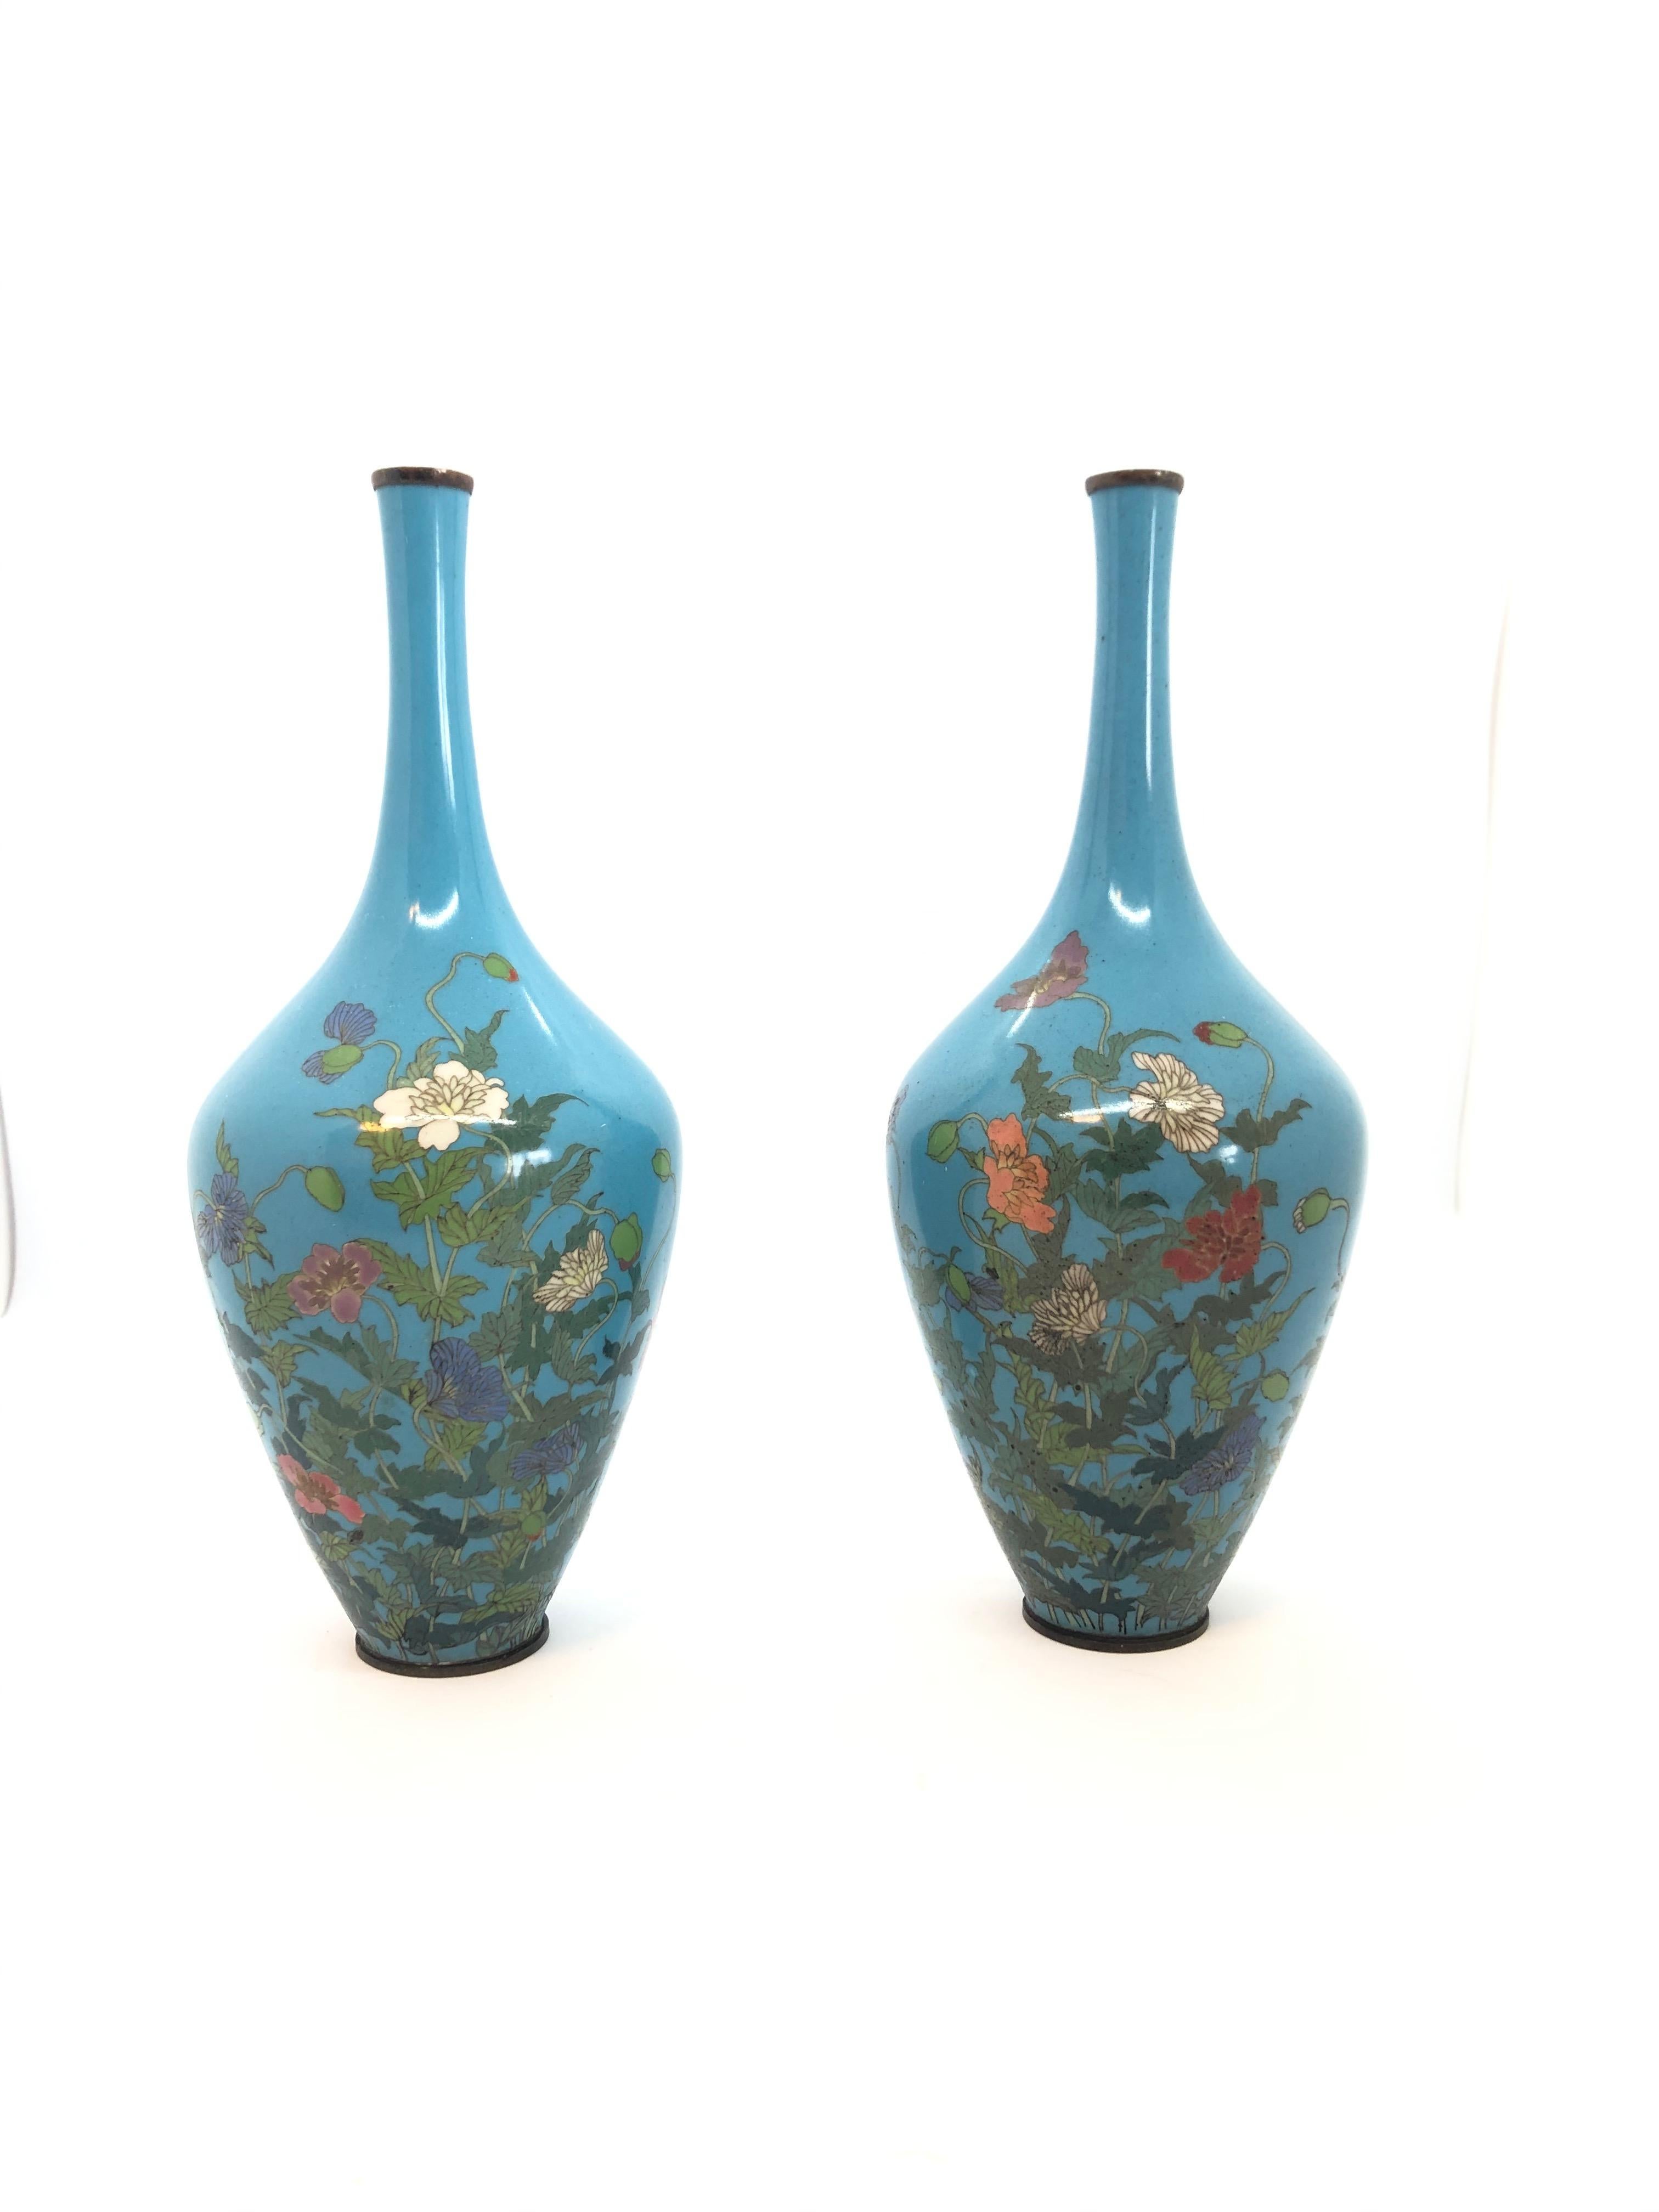 Cloissoné Pair of Japanese Cloisonné Vases, 19th Century For Sale